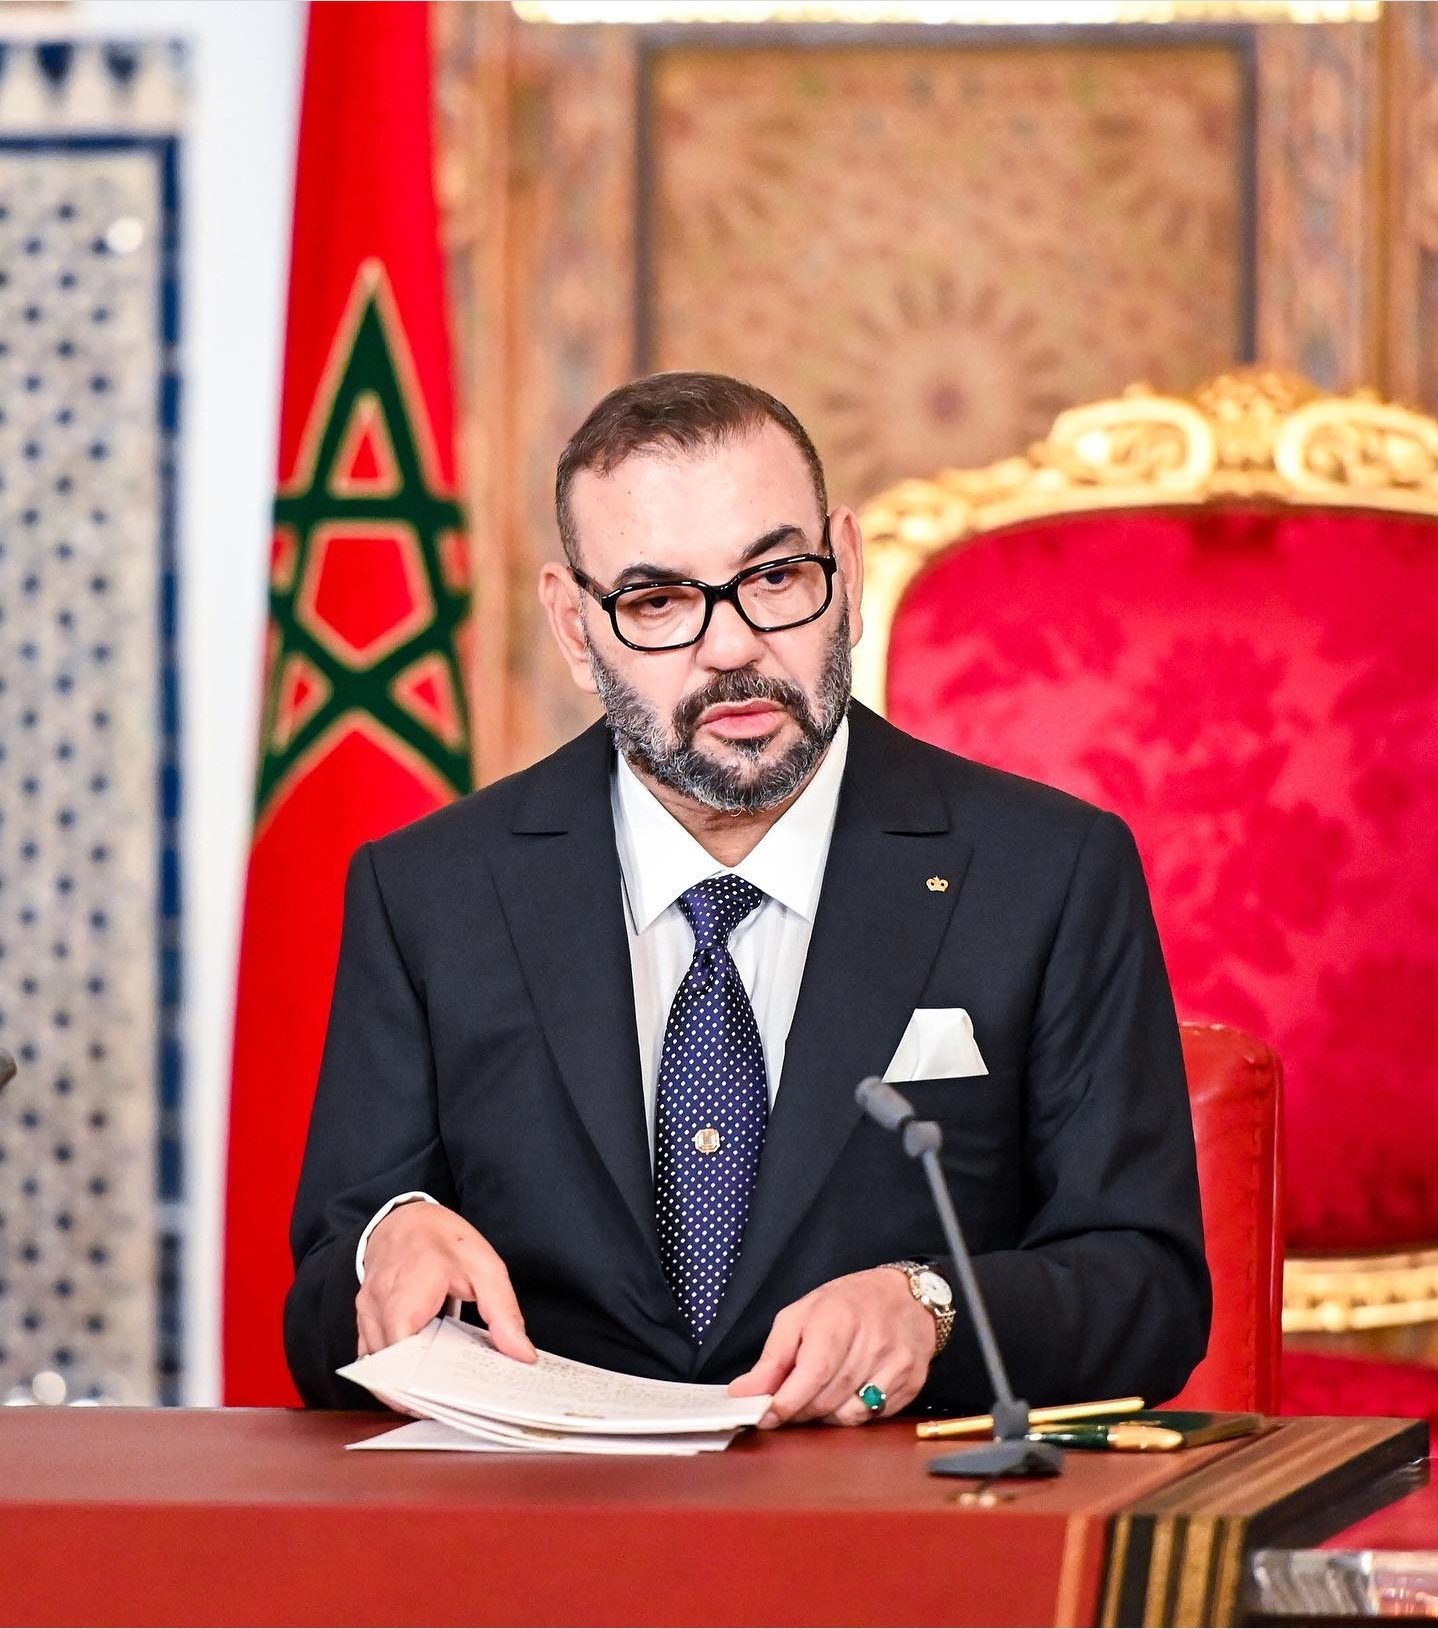 بن طلحة الدكالي: خطاب الملك إعلان رسمي أمام العالم لأجل بناء علاقات أخوية صلبة بين المغرب والجزائر